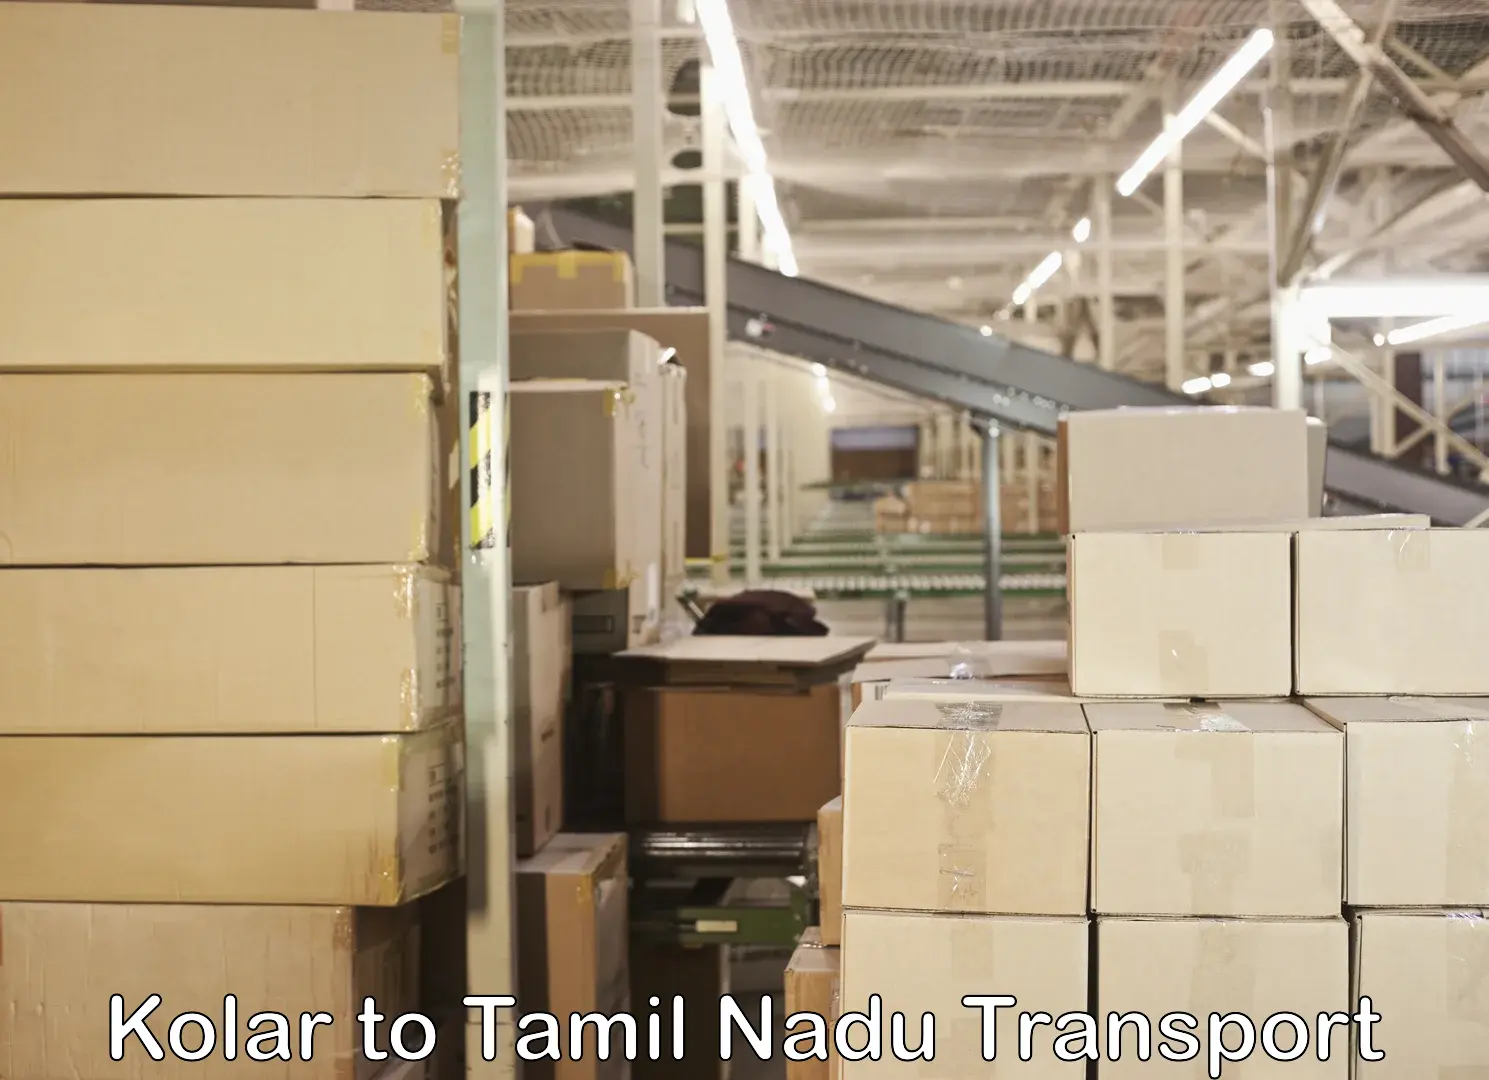 Shipping services Kolar to Chennai